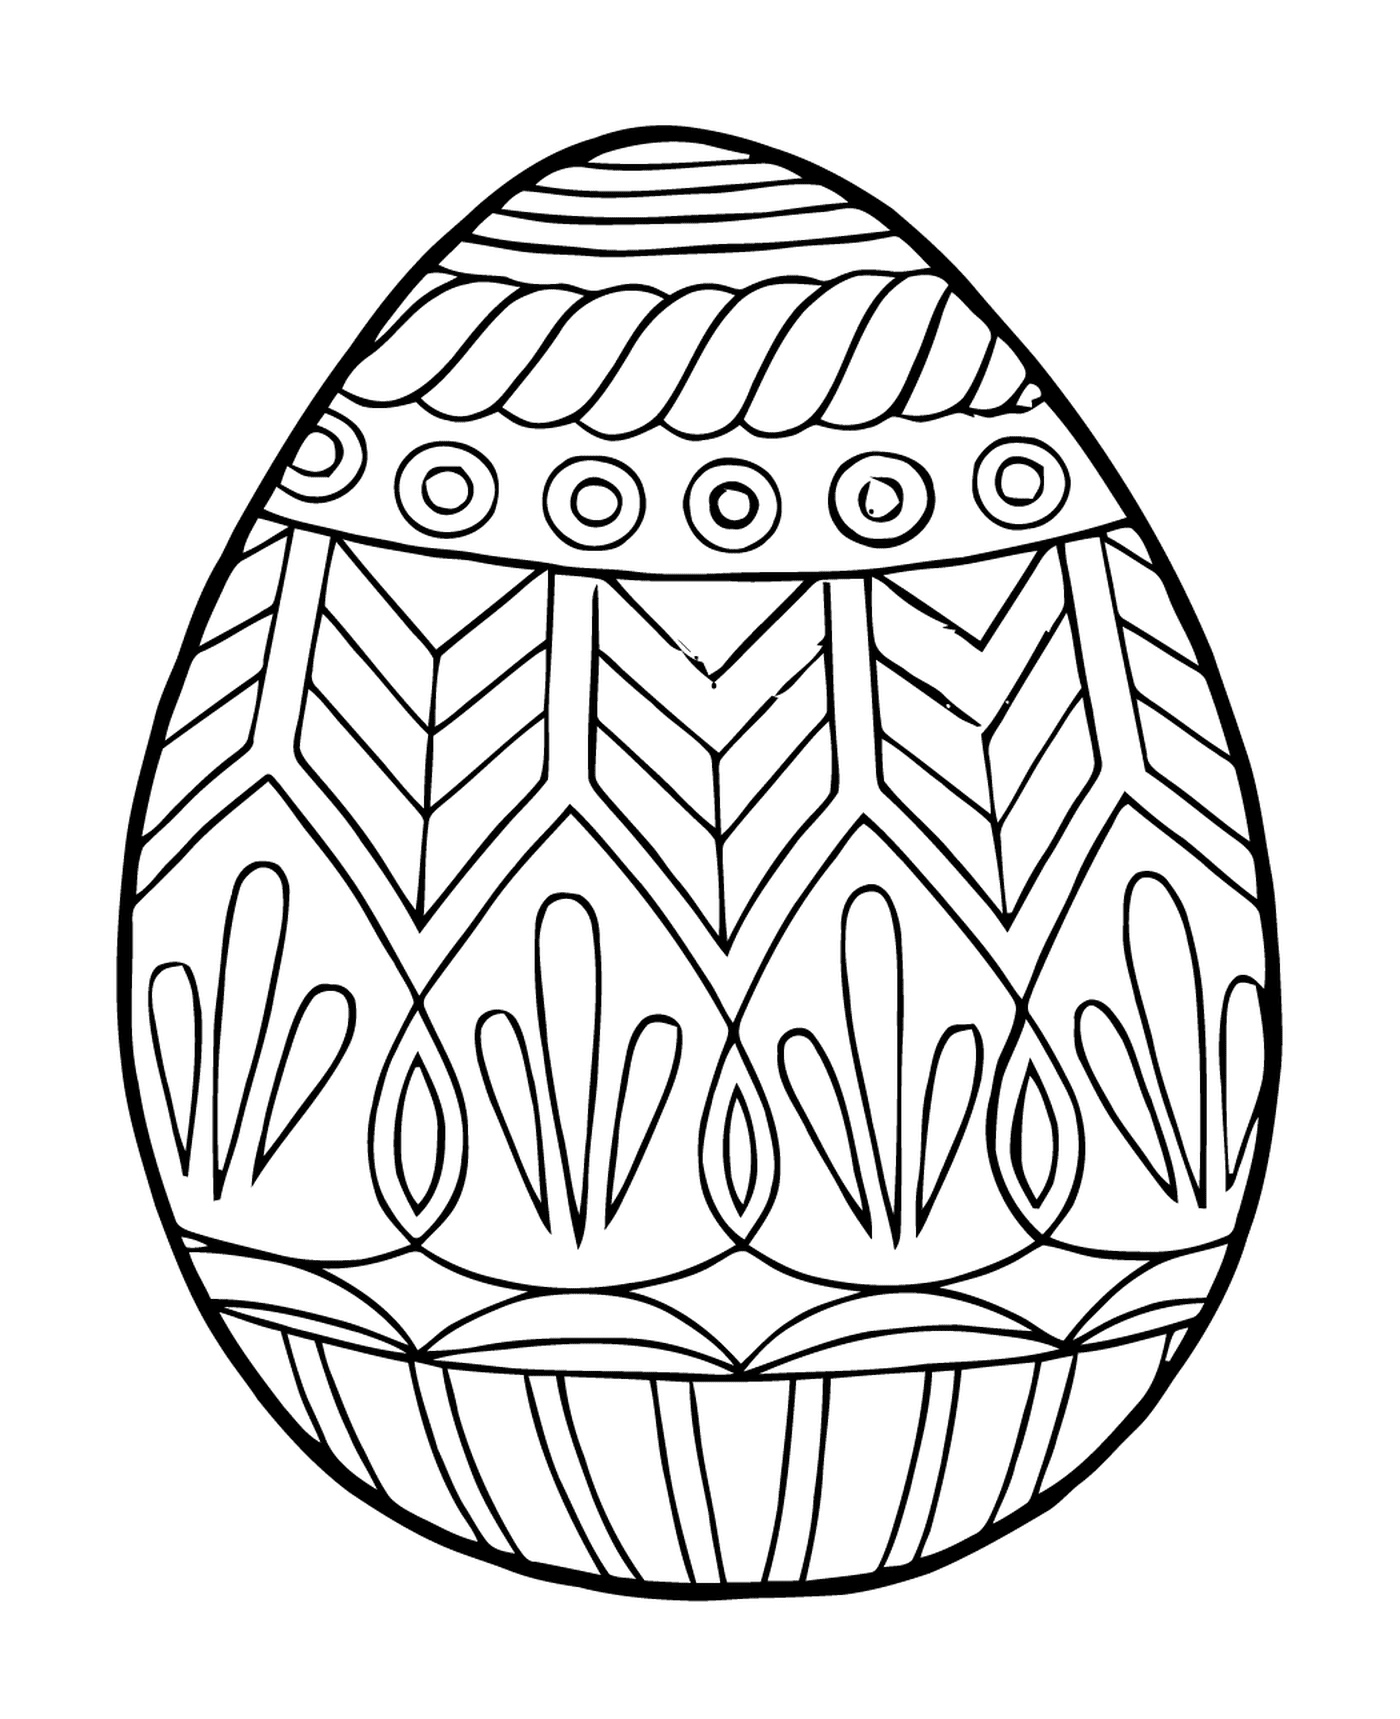  Ostern Erwachsenen Stress Reliver Mandala, ein buntes Ei 